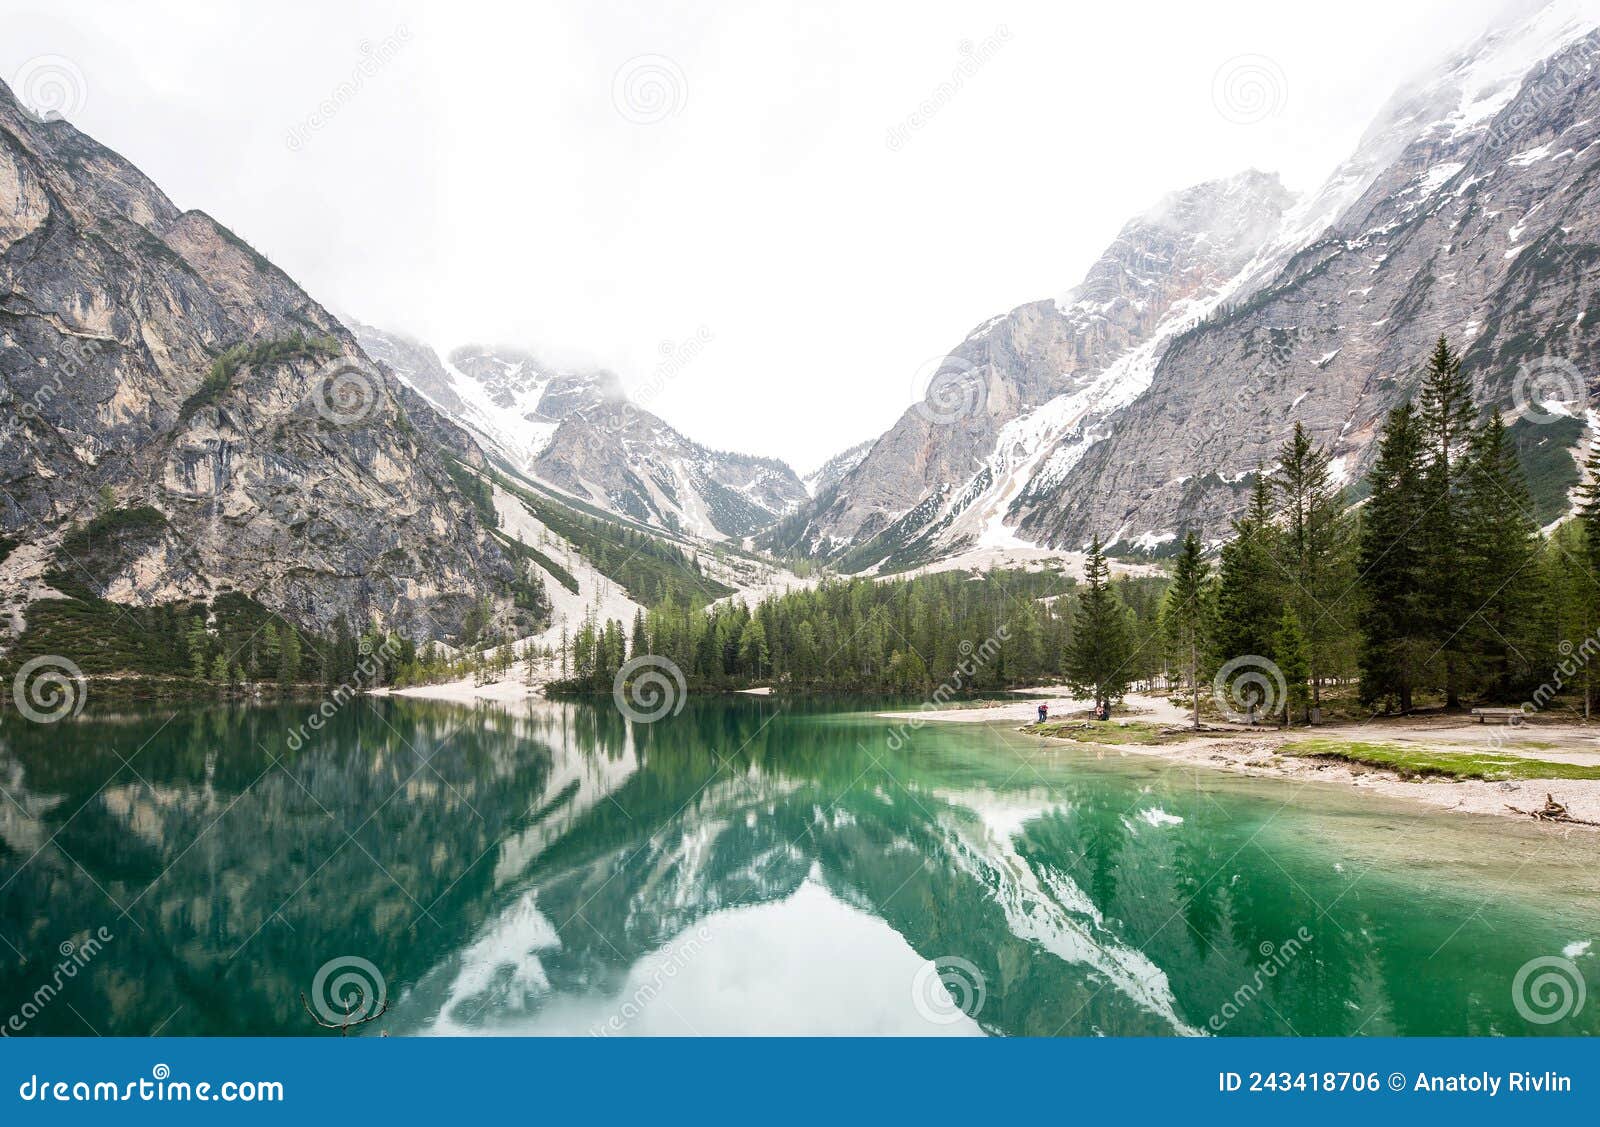 lago antorno alps dolomites italy